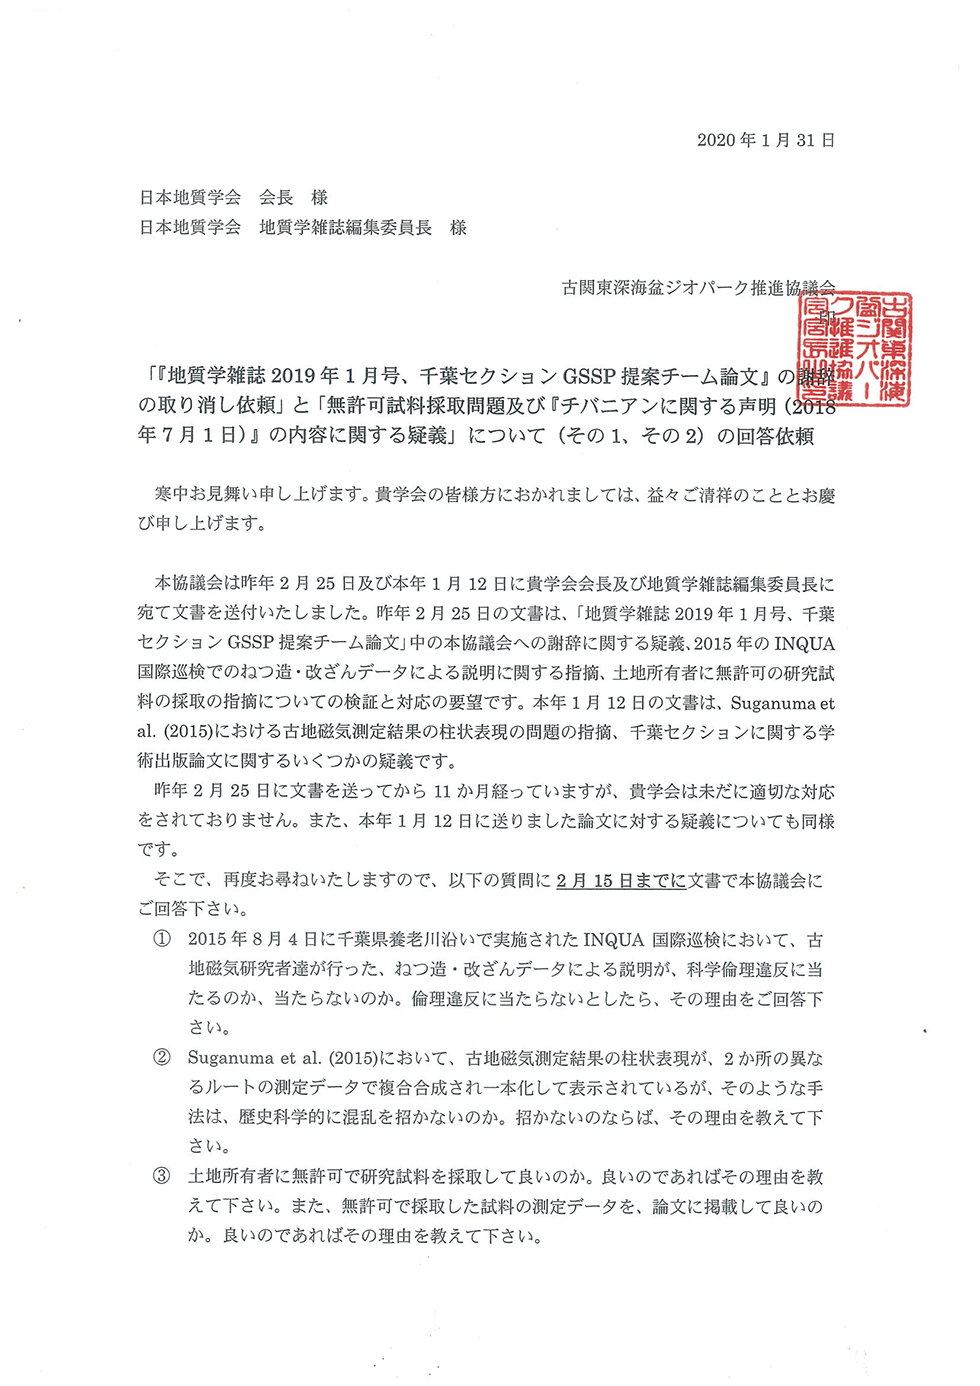 日本地質学会への「チバニアン」申請に関連した質問と要望について期限を切って回答のお願い